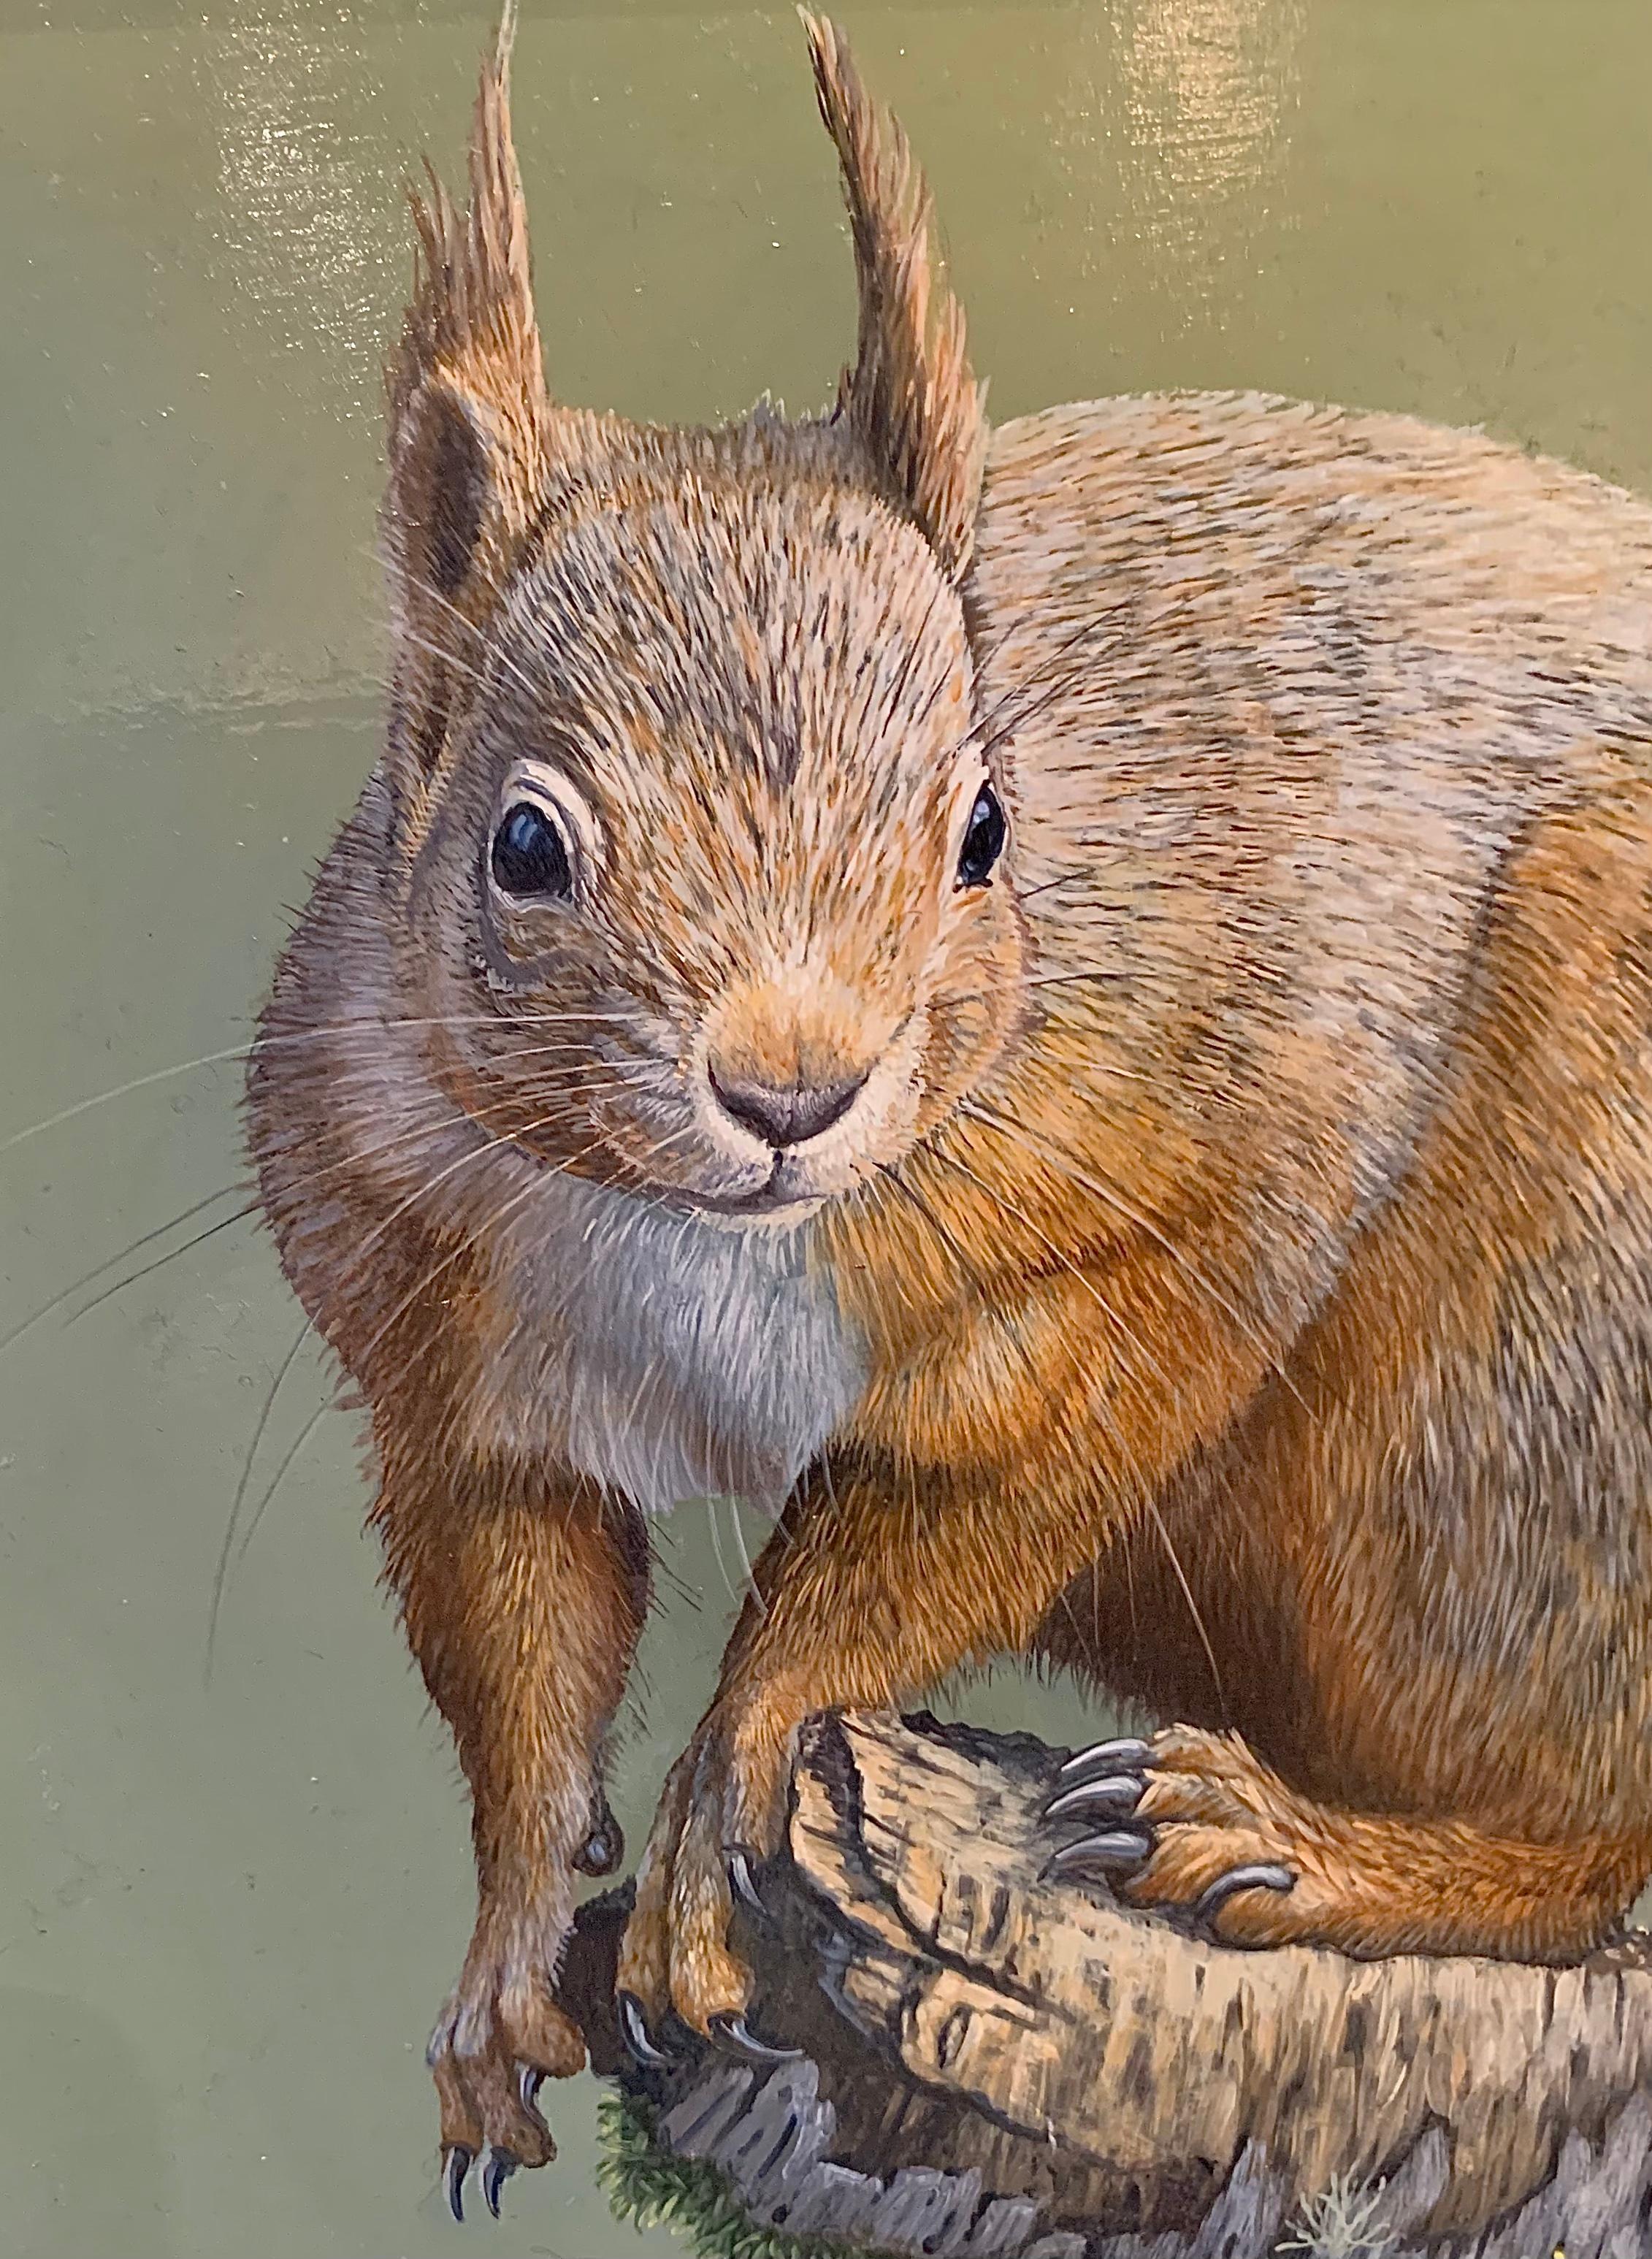 The End of the Road Fotorealistisches Gemälde eines roten Eichhörnchens auf einem Ast, grün (Fotorealismus), Painting, von Ben Waddams